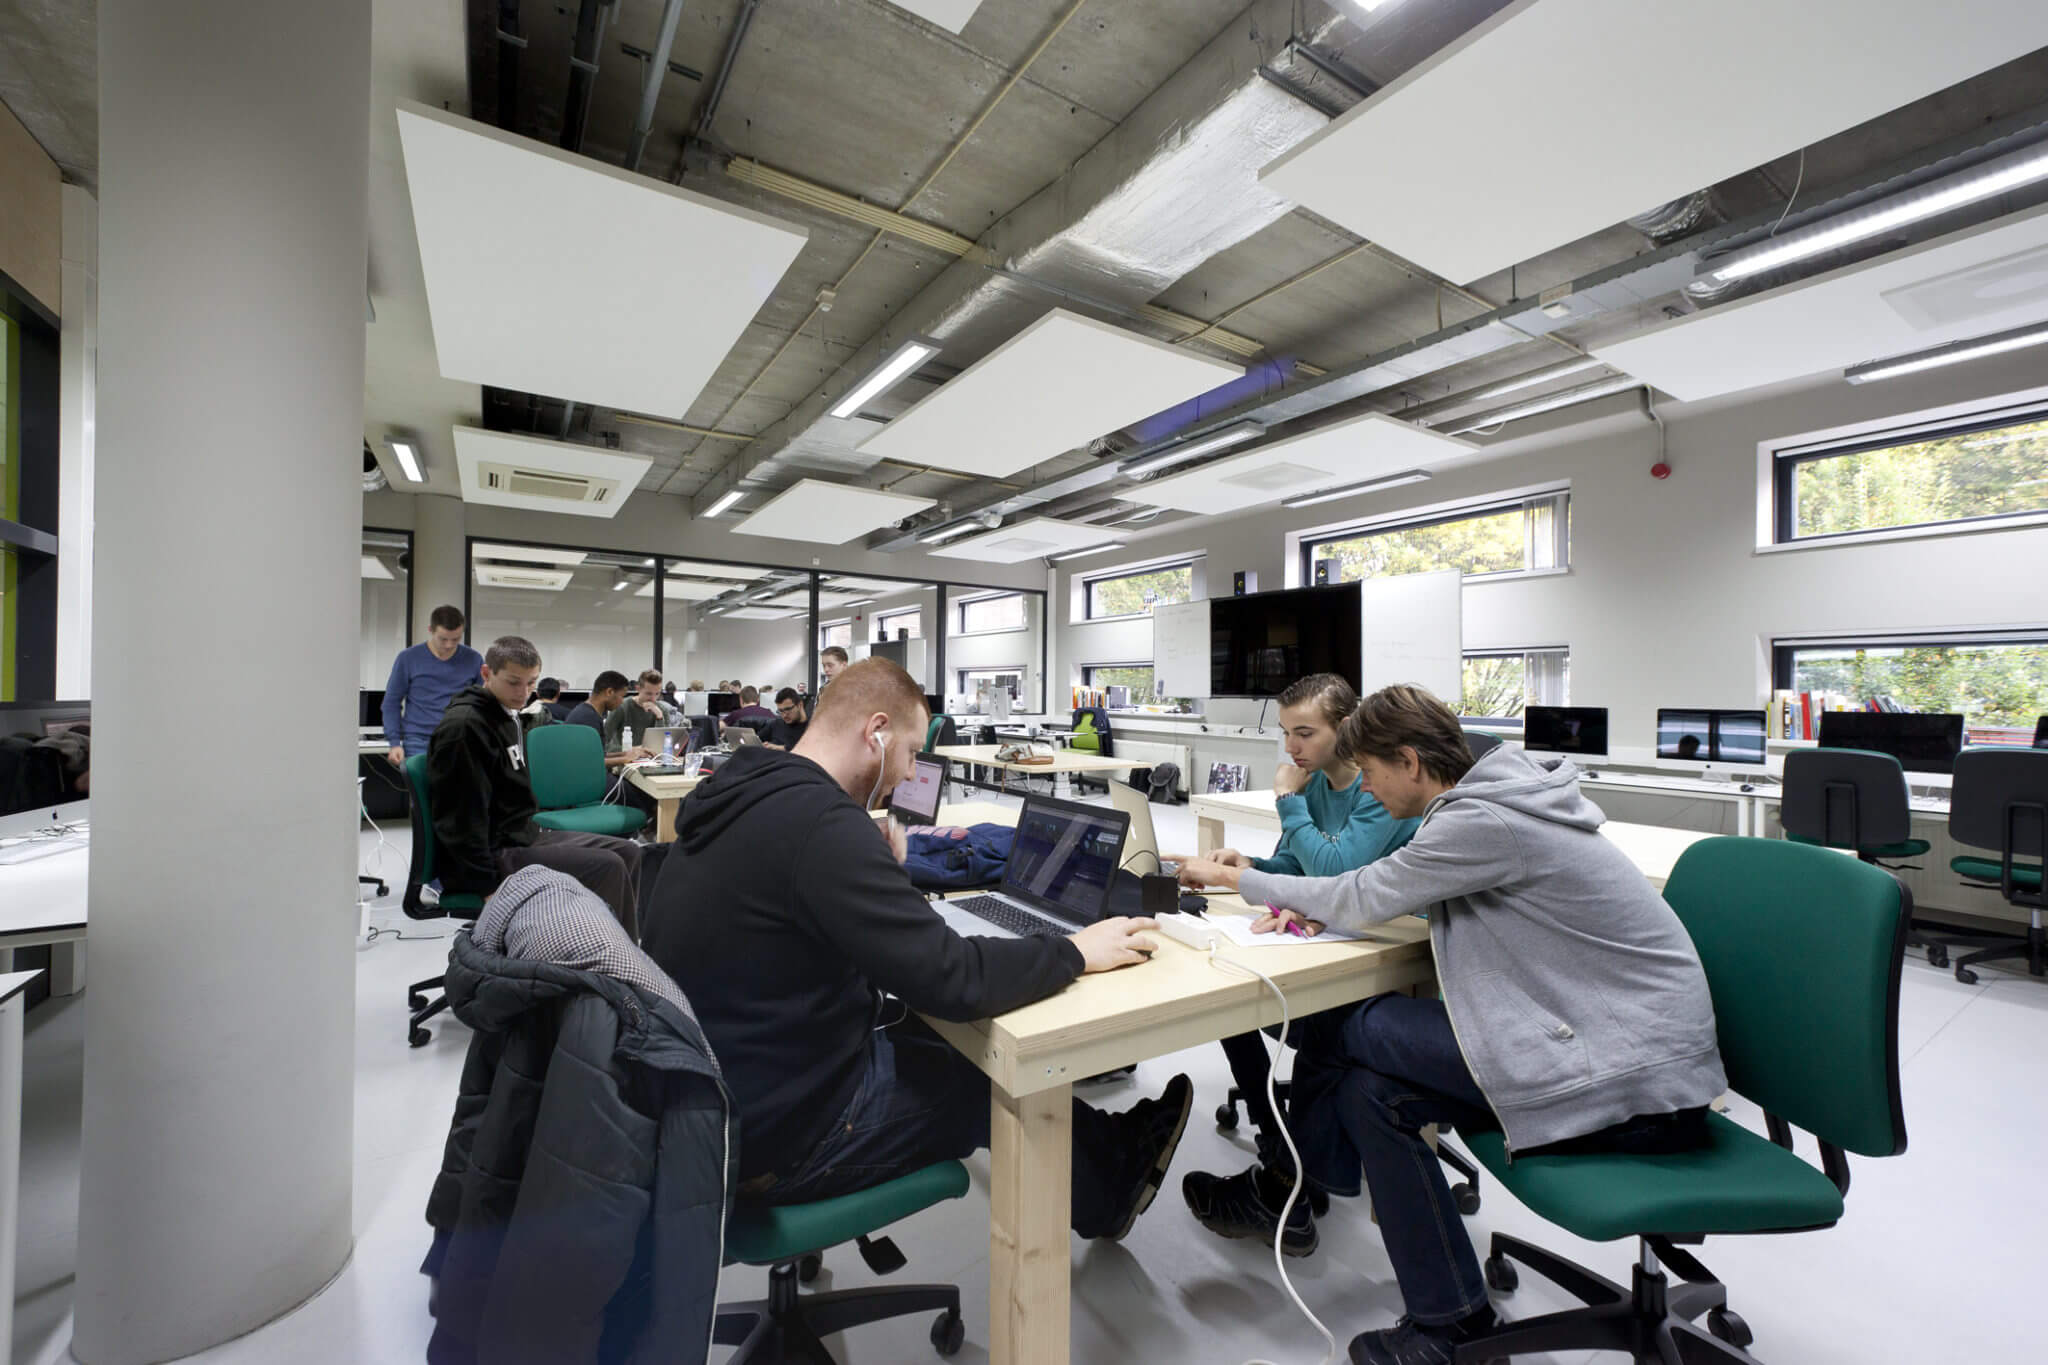 Tilburg onderwijs ROC ICT media OGT technologie renovatie domein ontmoeting beroepsomgeving creatief ateliers no-nonsense server cockpits